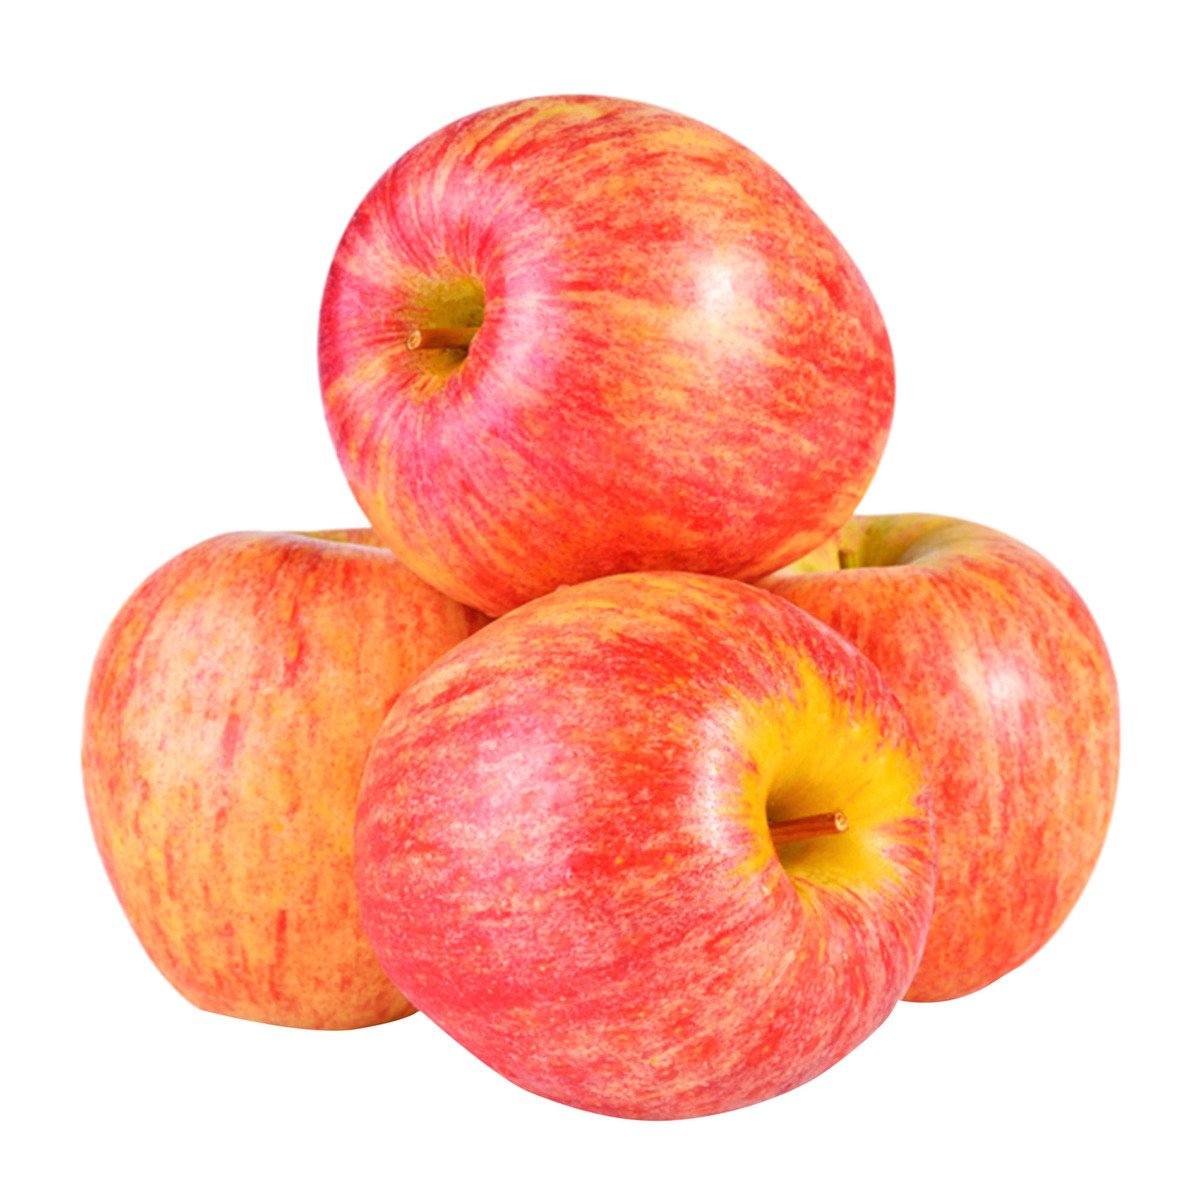 Buy Apple Royal Gala UK 1 kg Online at Best Price | Apples | Lulu Kuwait in UAE